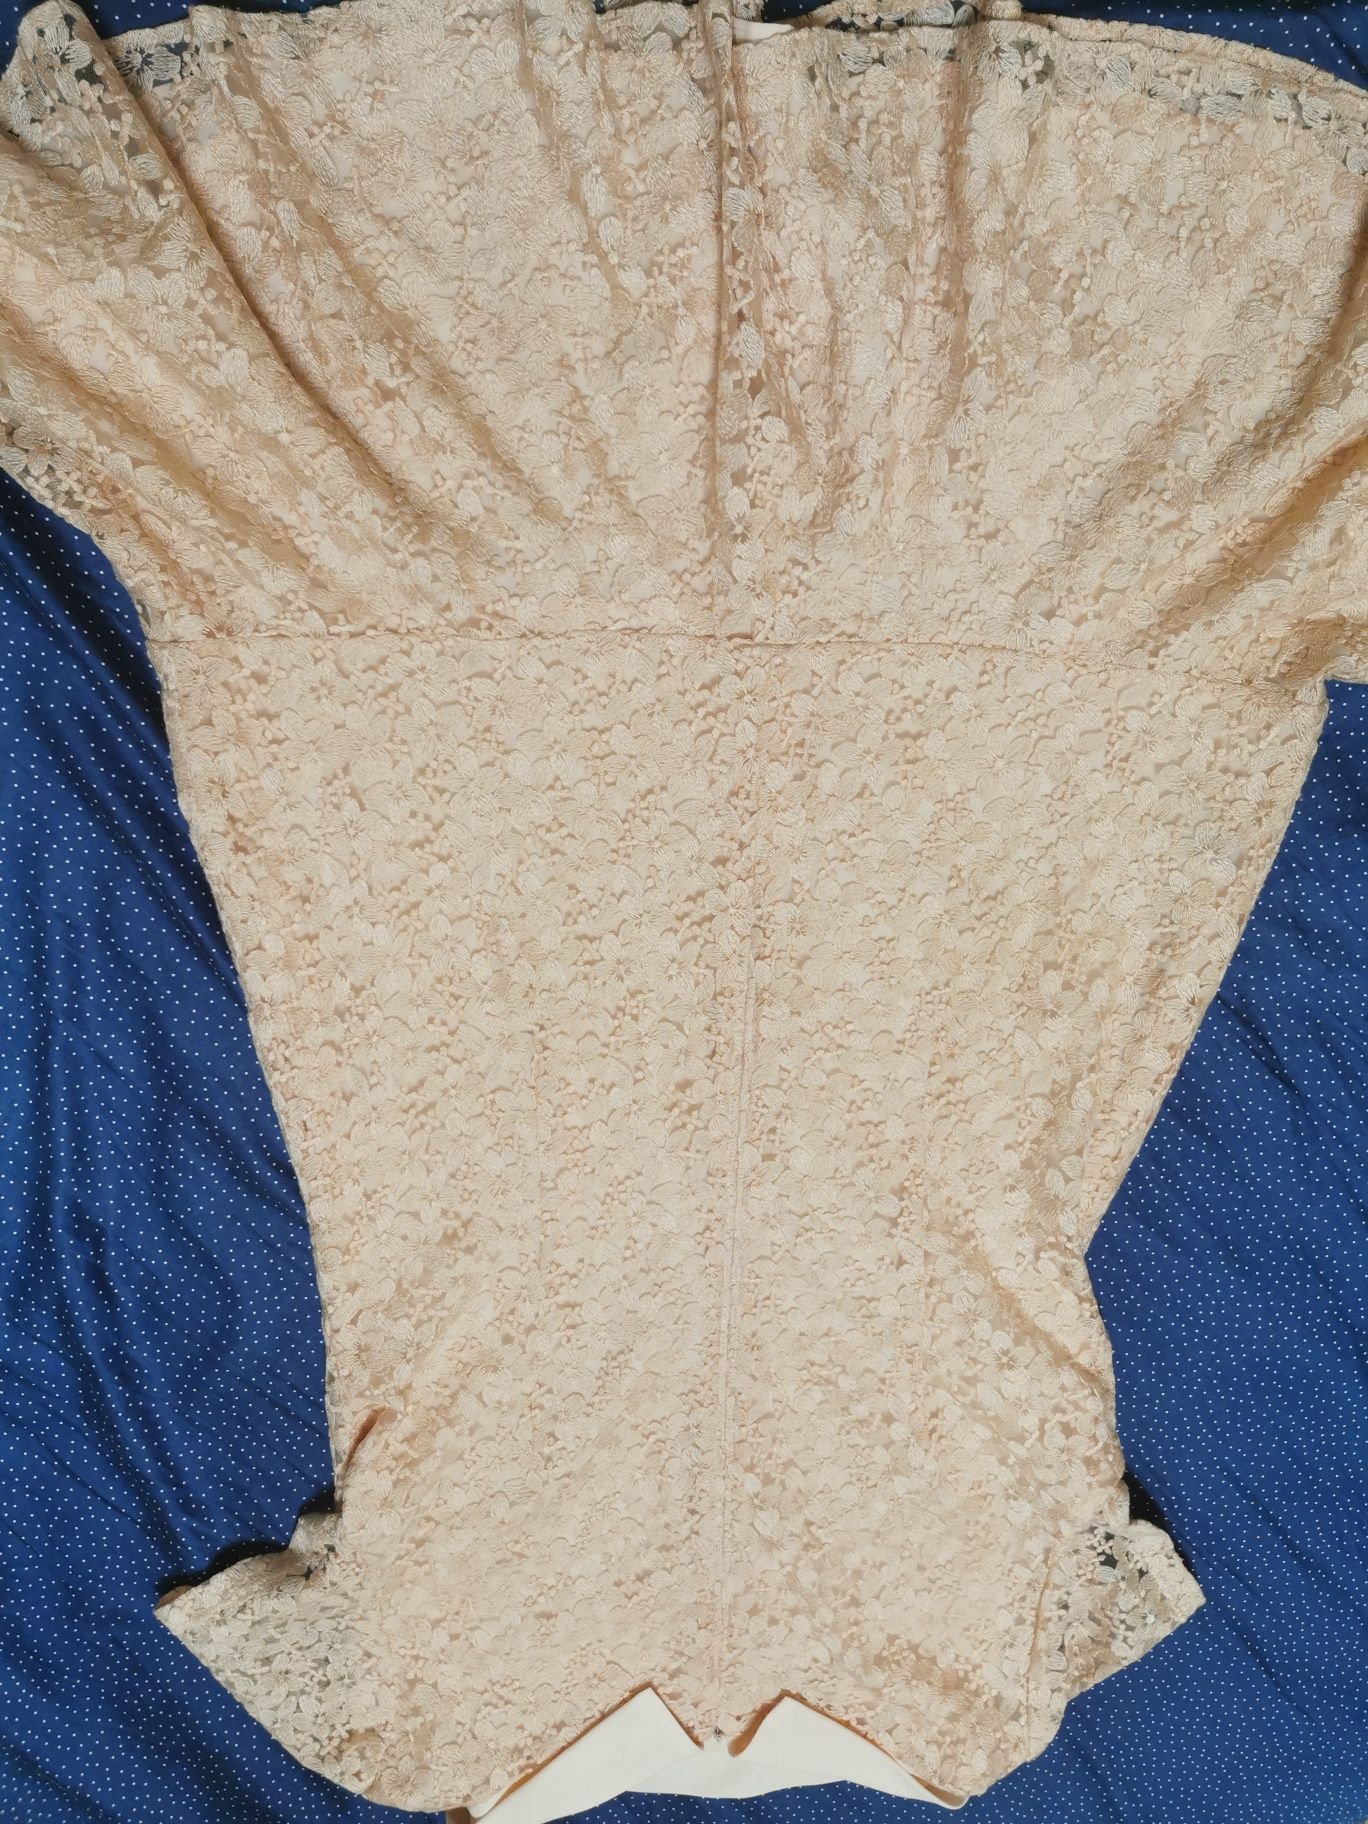 Женское платье, Jean Paul производство Польша, рр 48